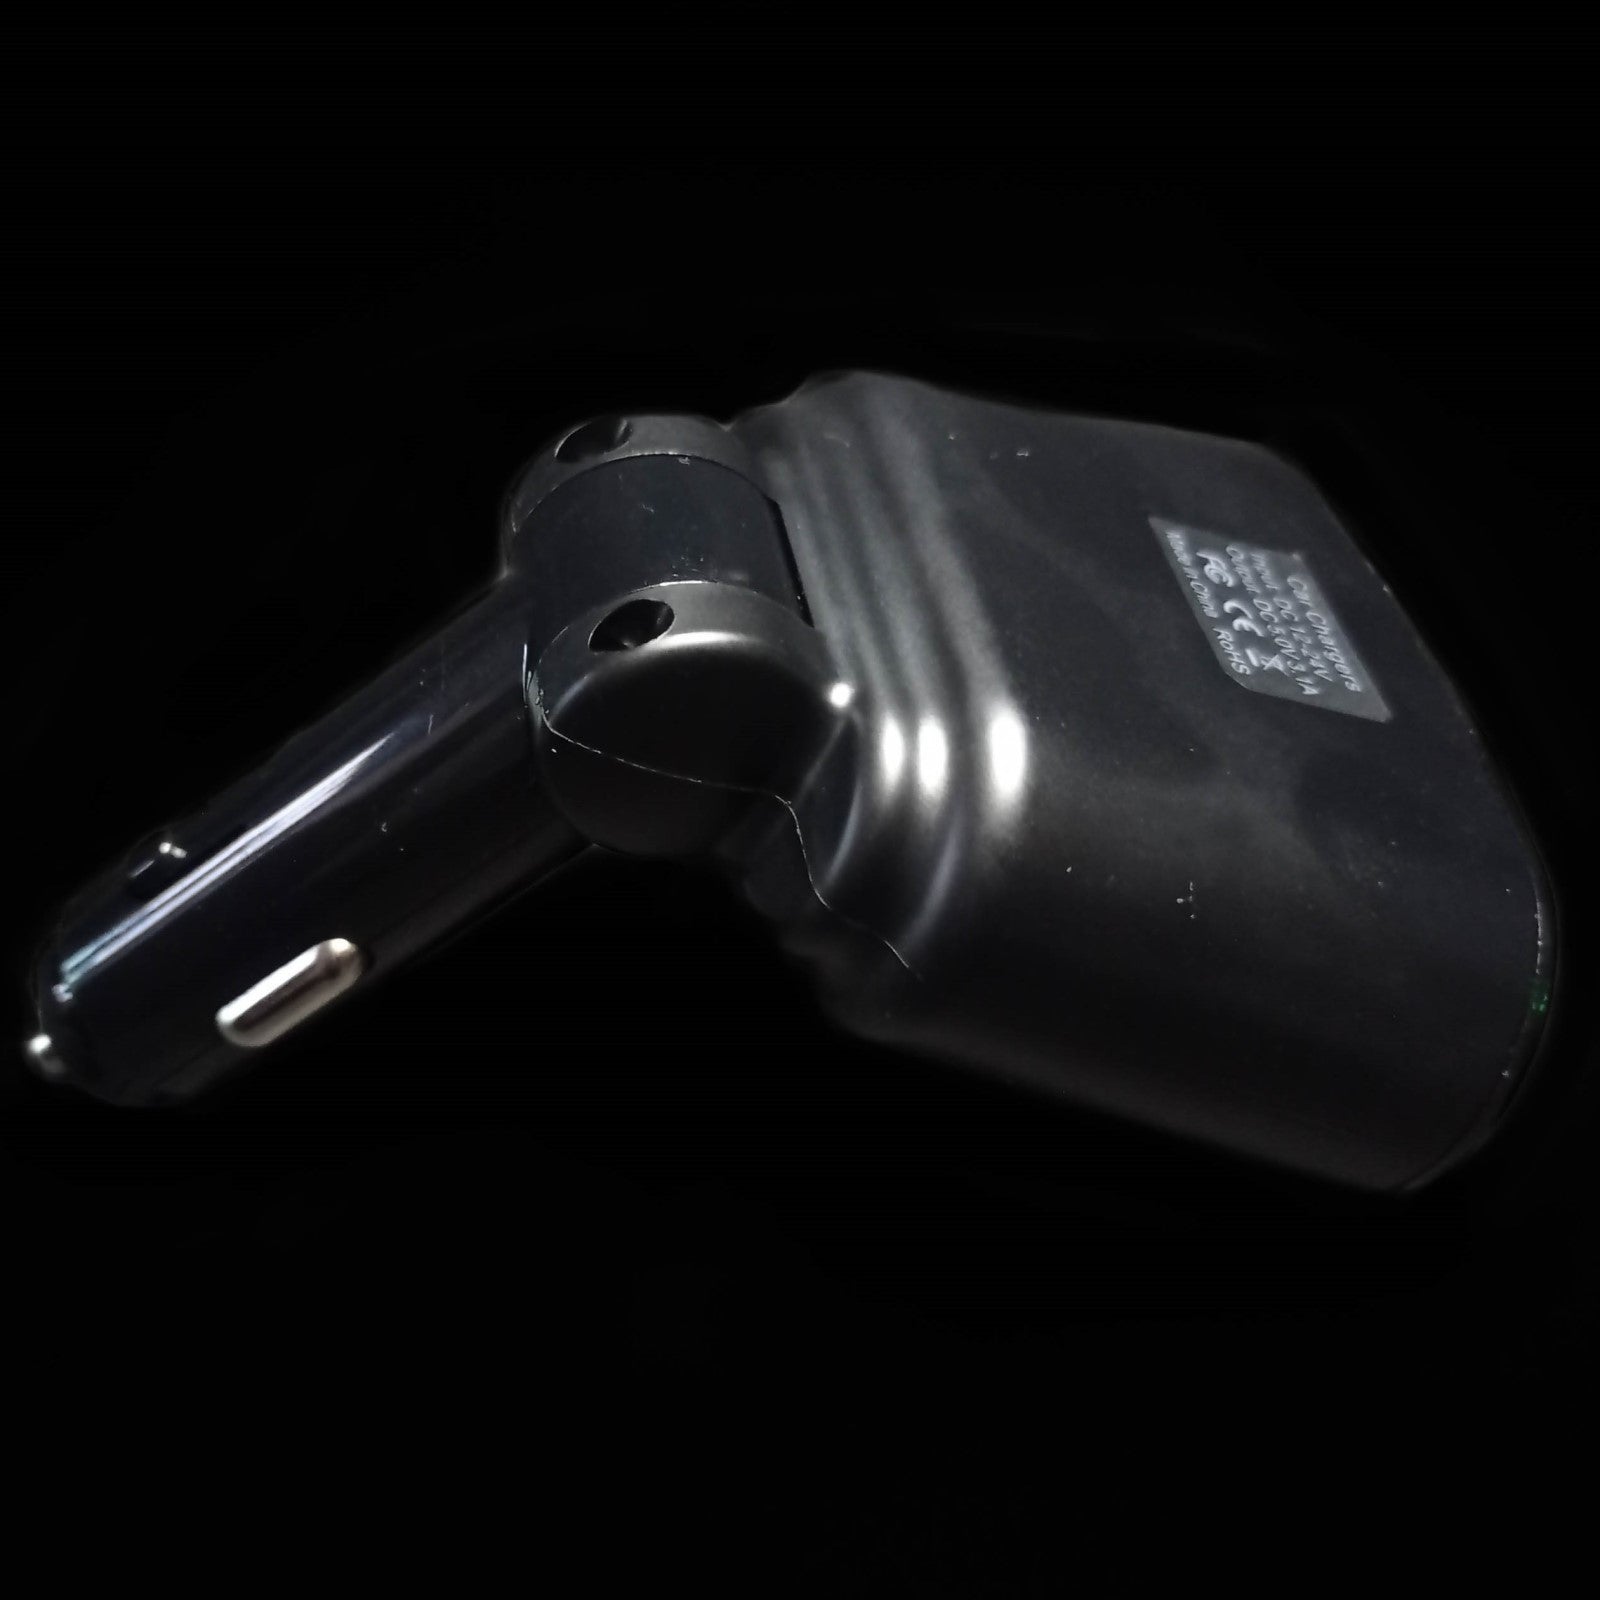 Carregador Isqueiro Duplo com ligações USB, detalhe da parte de trás do produto, na cor preto